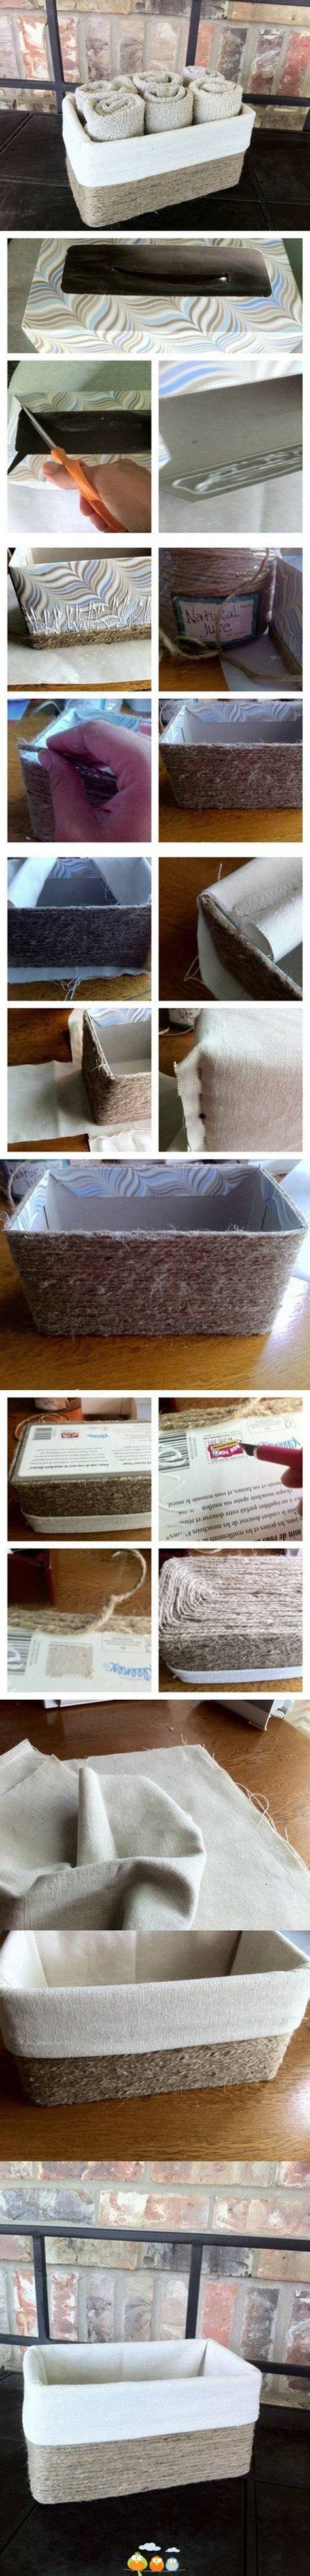 kleenex box crafts ideas kleenex box tissue boxes kleenex box crafts